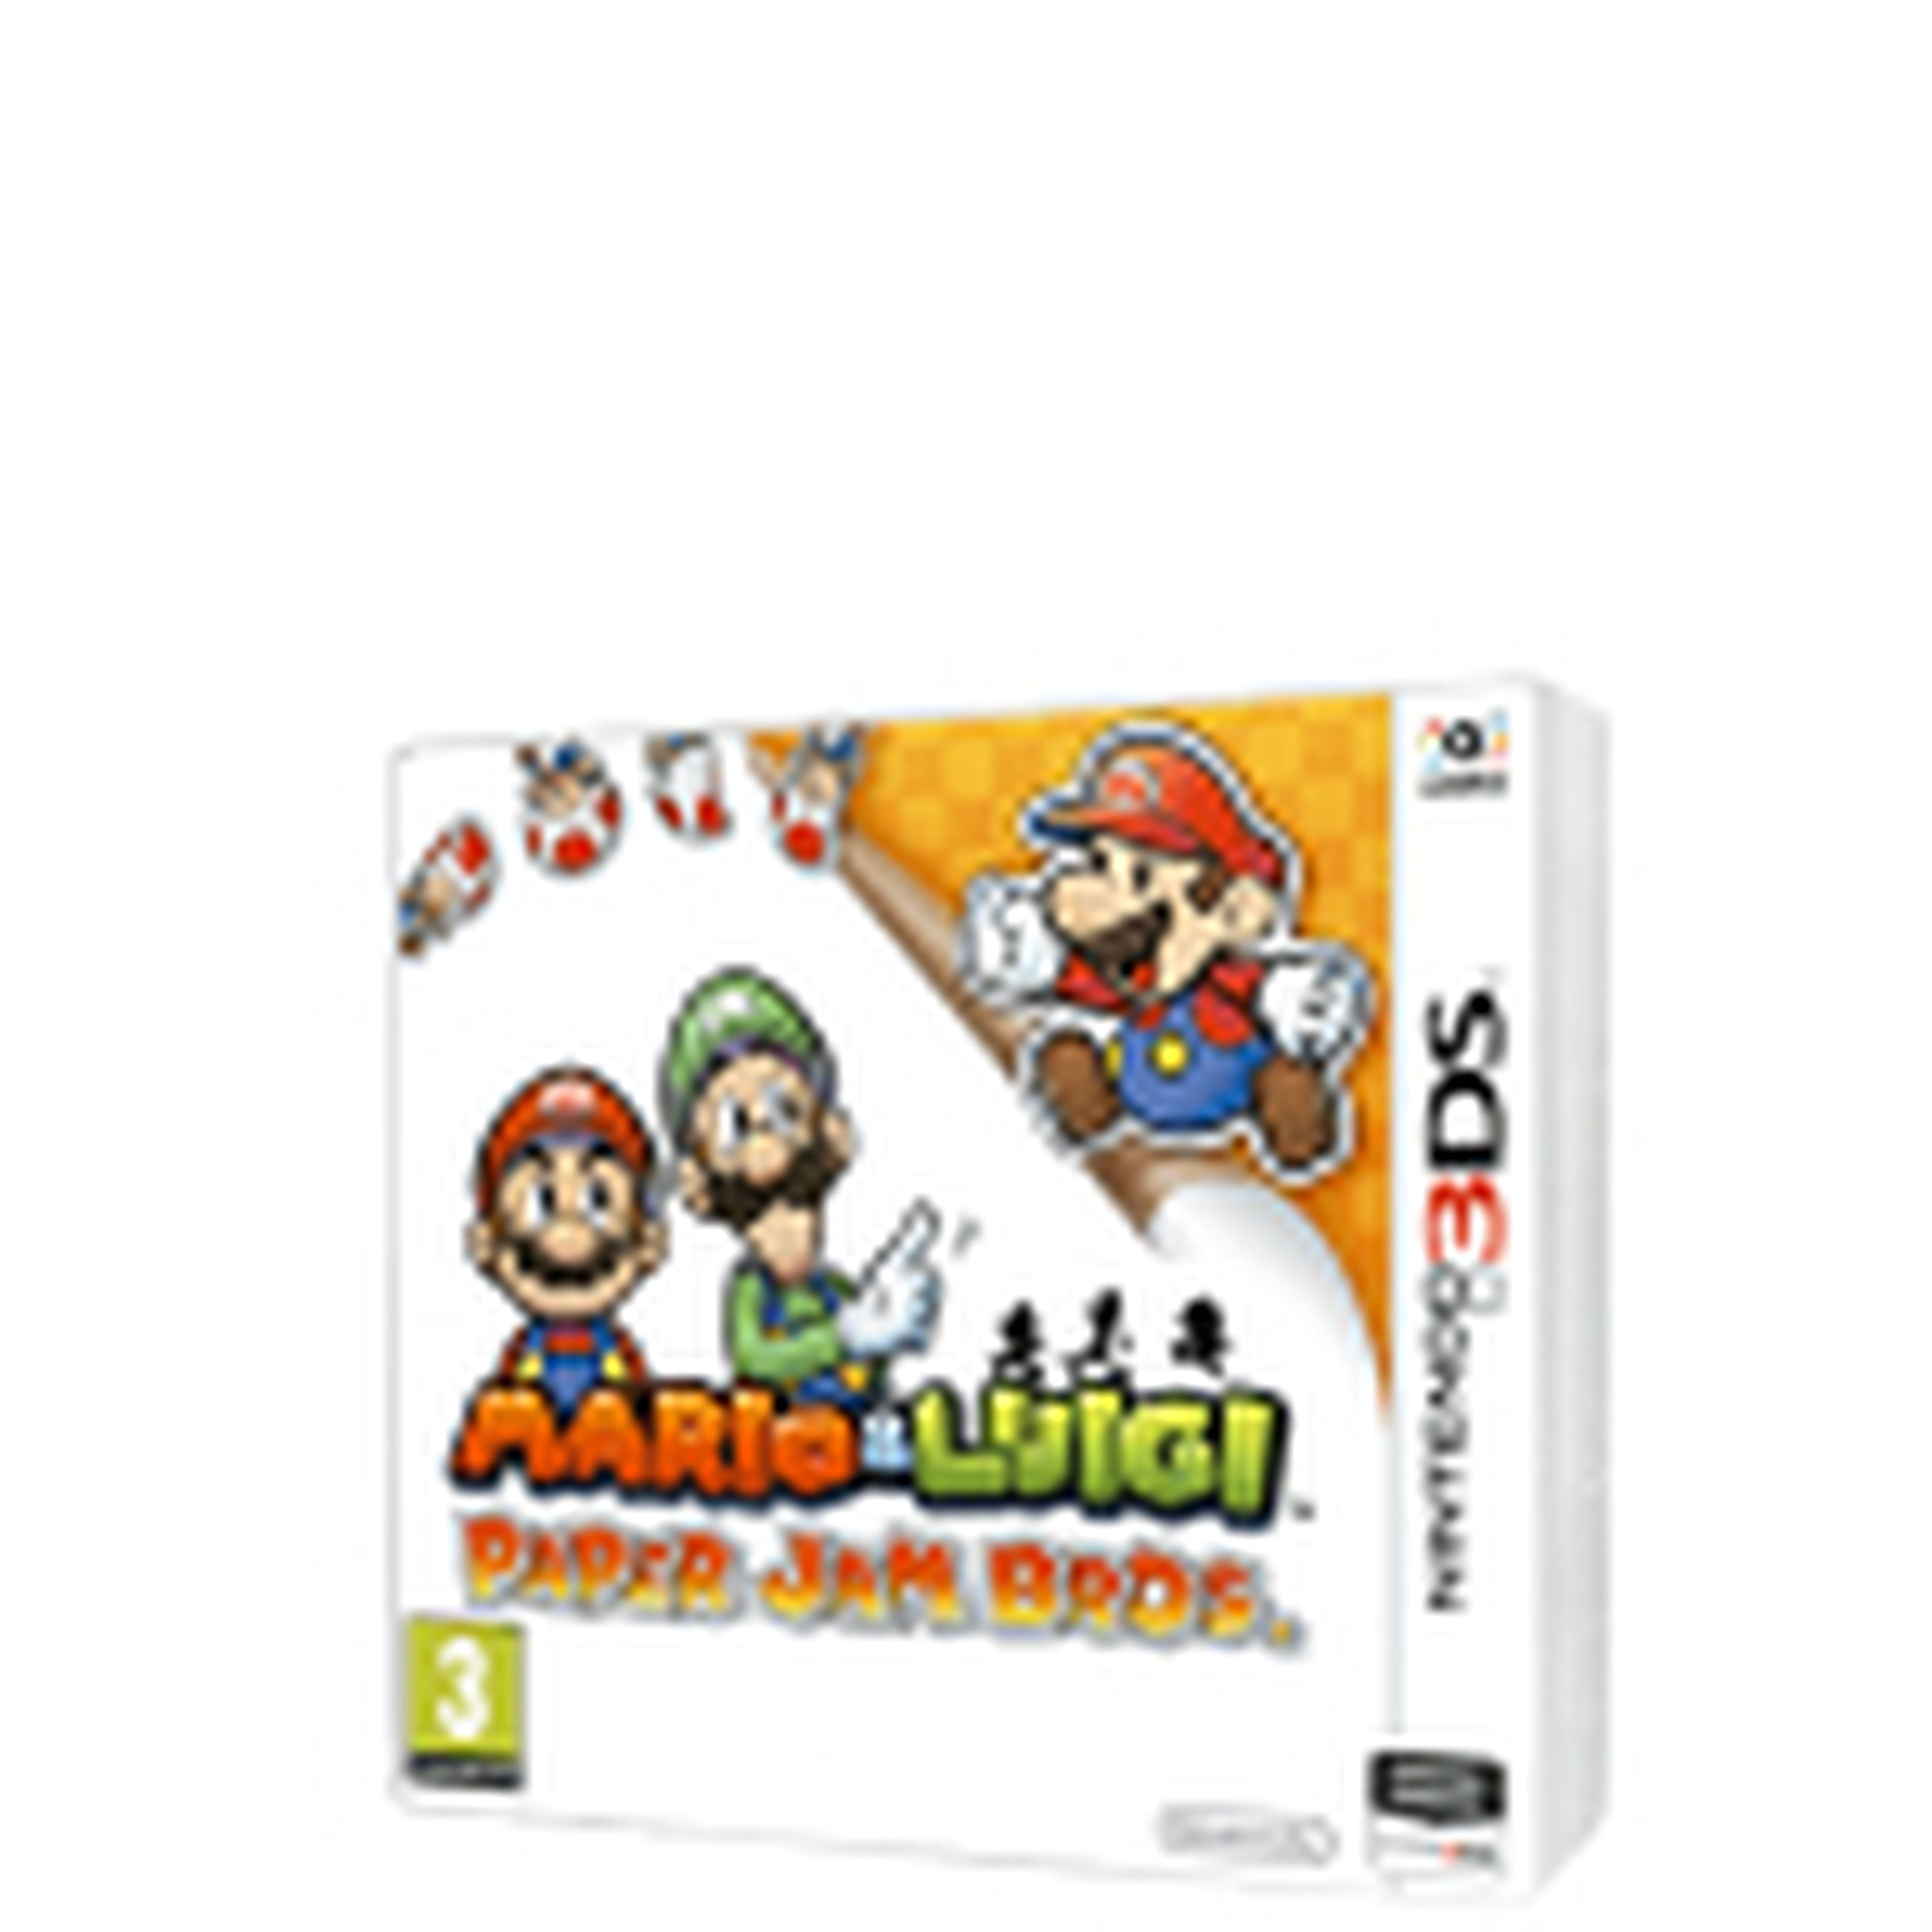 Mario & Luigi Paper Jam Bros. para 3DS